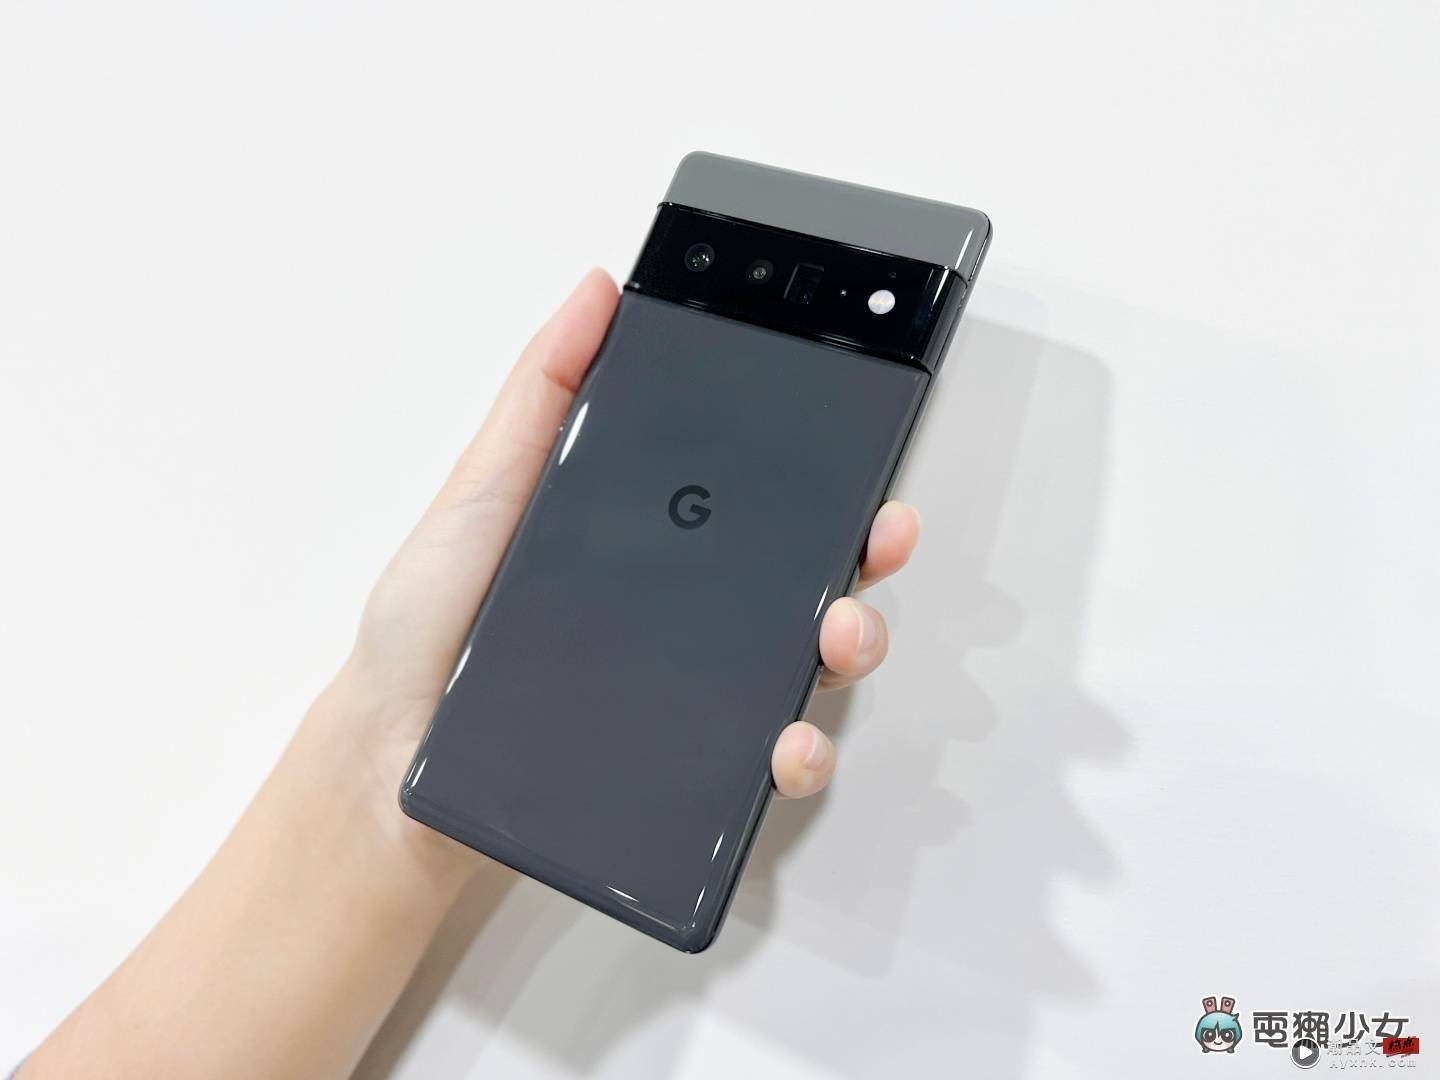 Google Pixel 手机 2 月更新已推出 不过 6 系列又出事了 数码科技 图1张